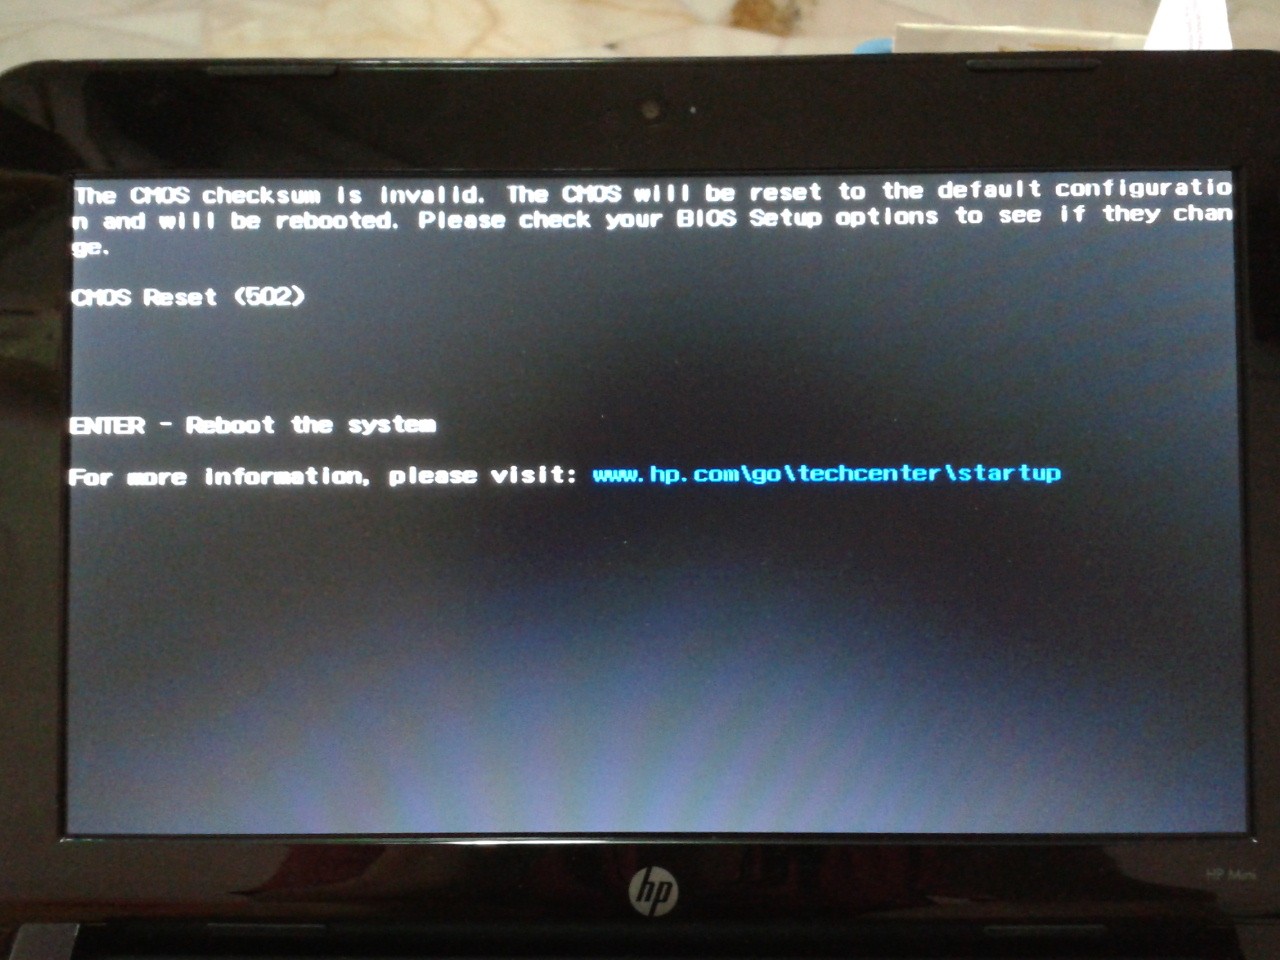 Im getting CMOS reset (27) error code when restarts my lapt